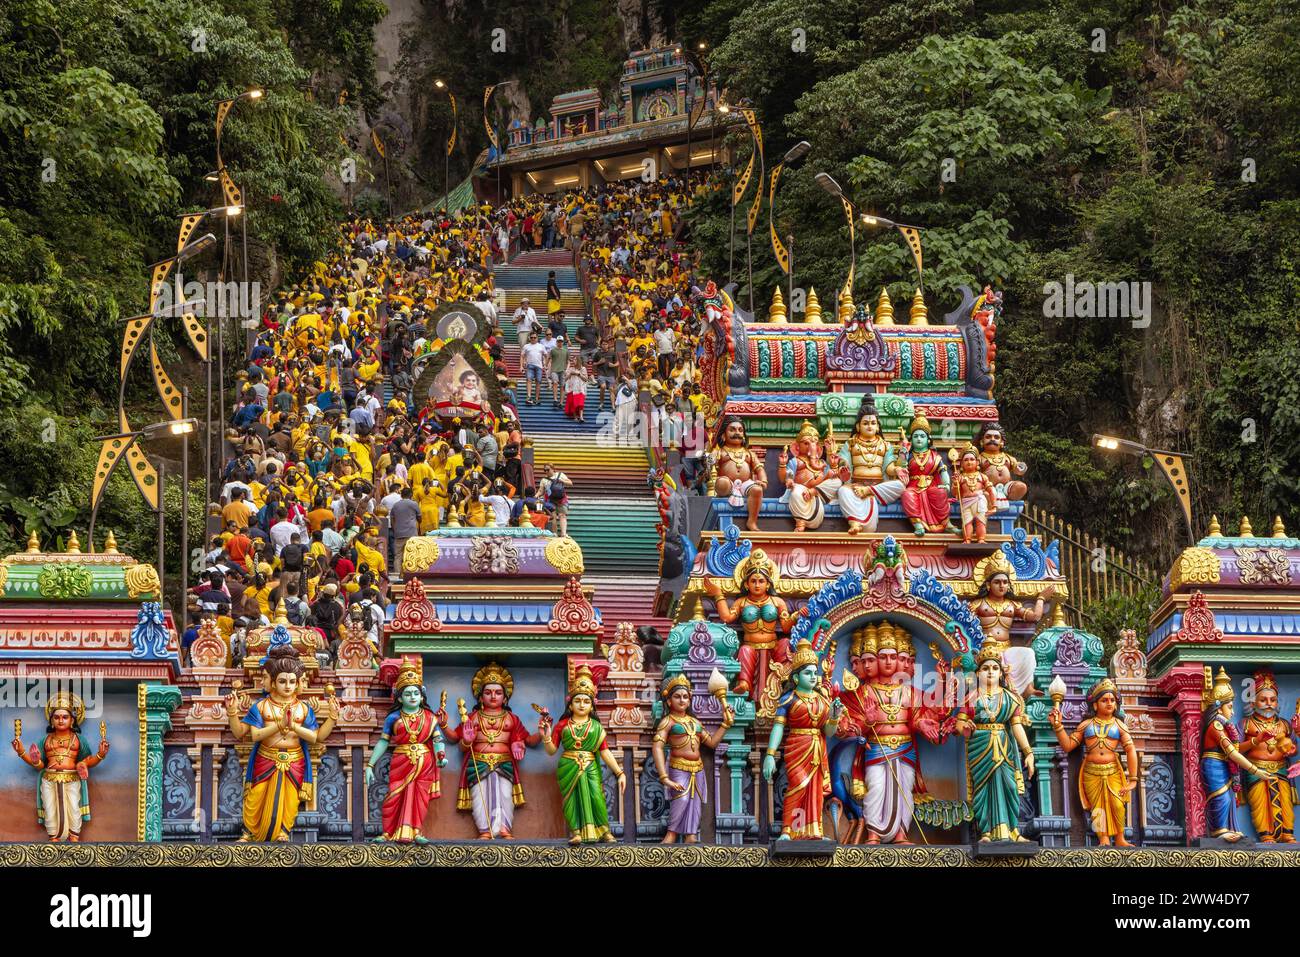 Les visiteurs qui célèbrent le festival hindou de Thaipusam montent l'escalier de 272 marches menant au temple hindou des grottes de Batu en Malaisie à Kuala Lumpur Banque D'Images